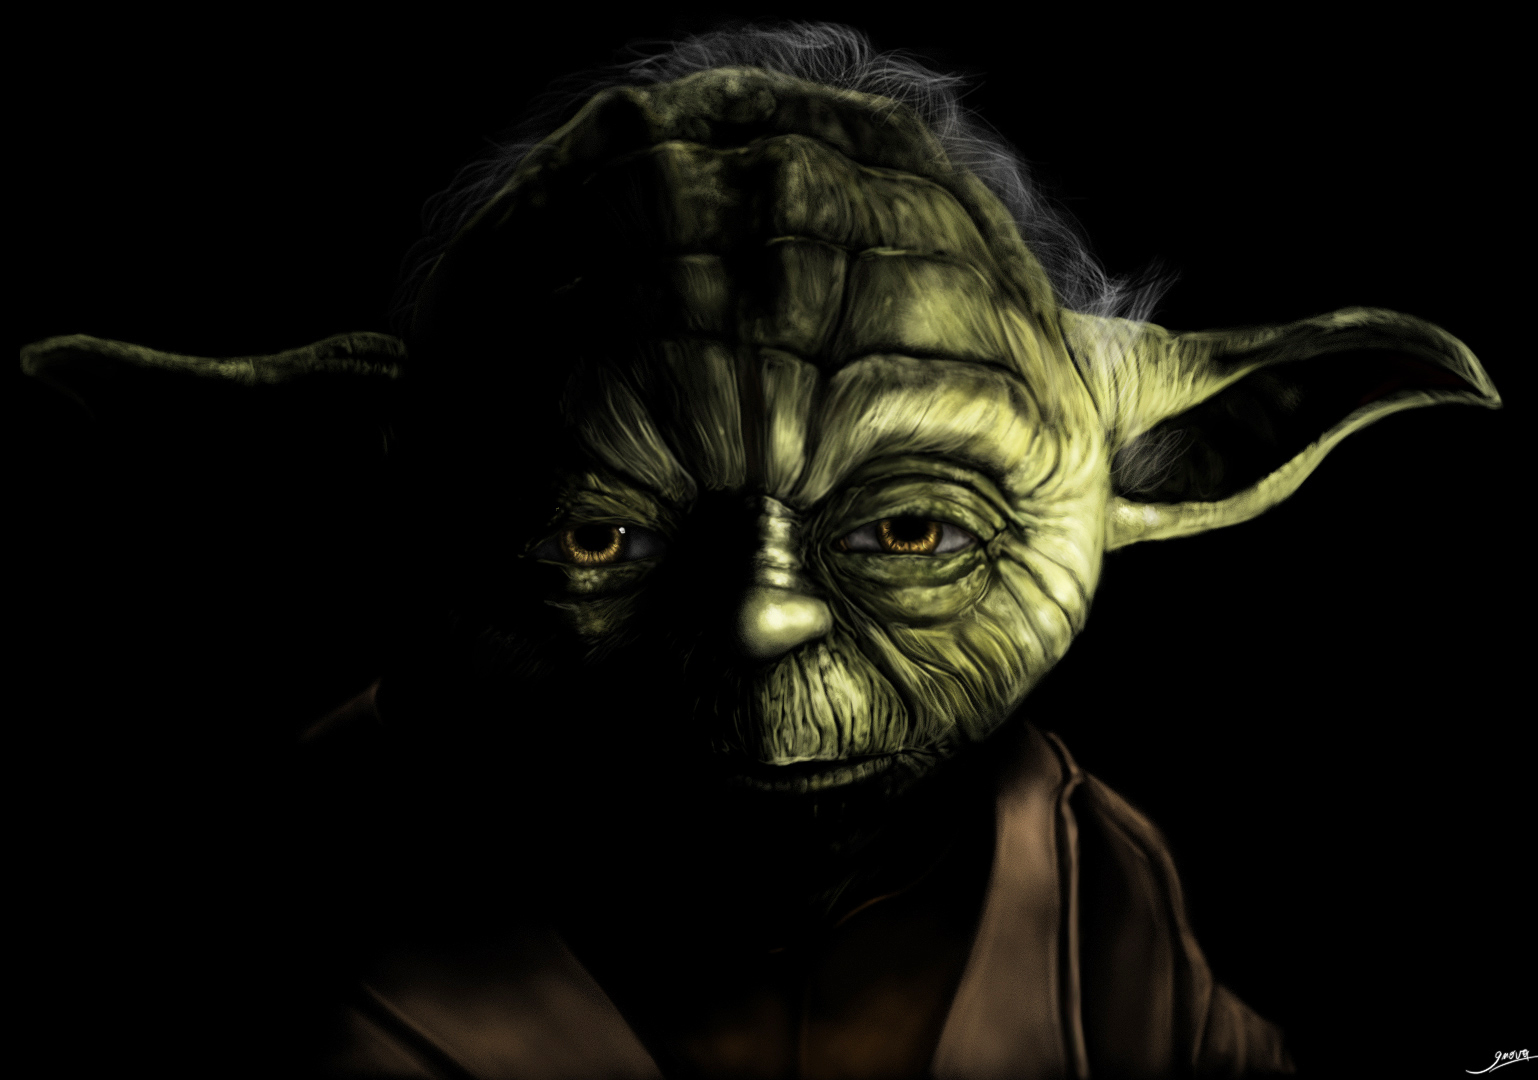 Master Yoda V by Giova94 on